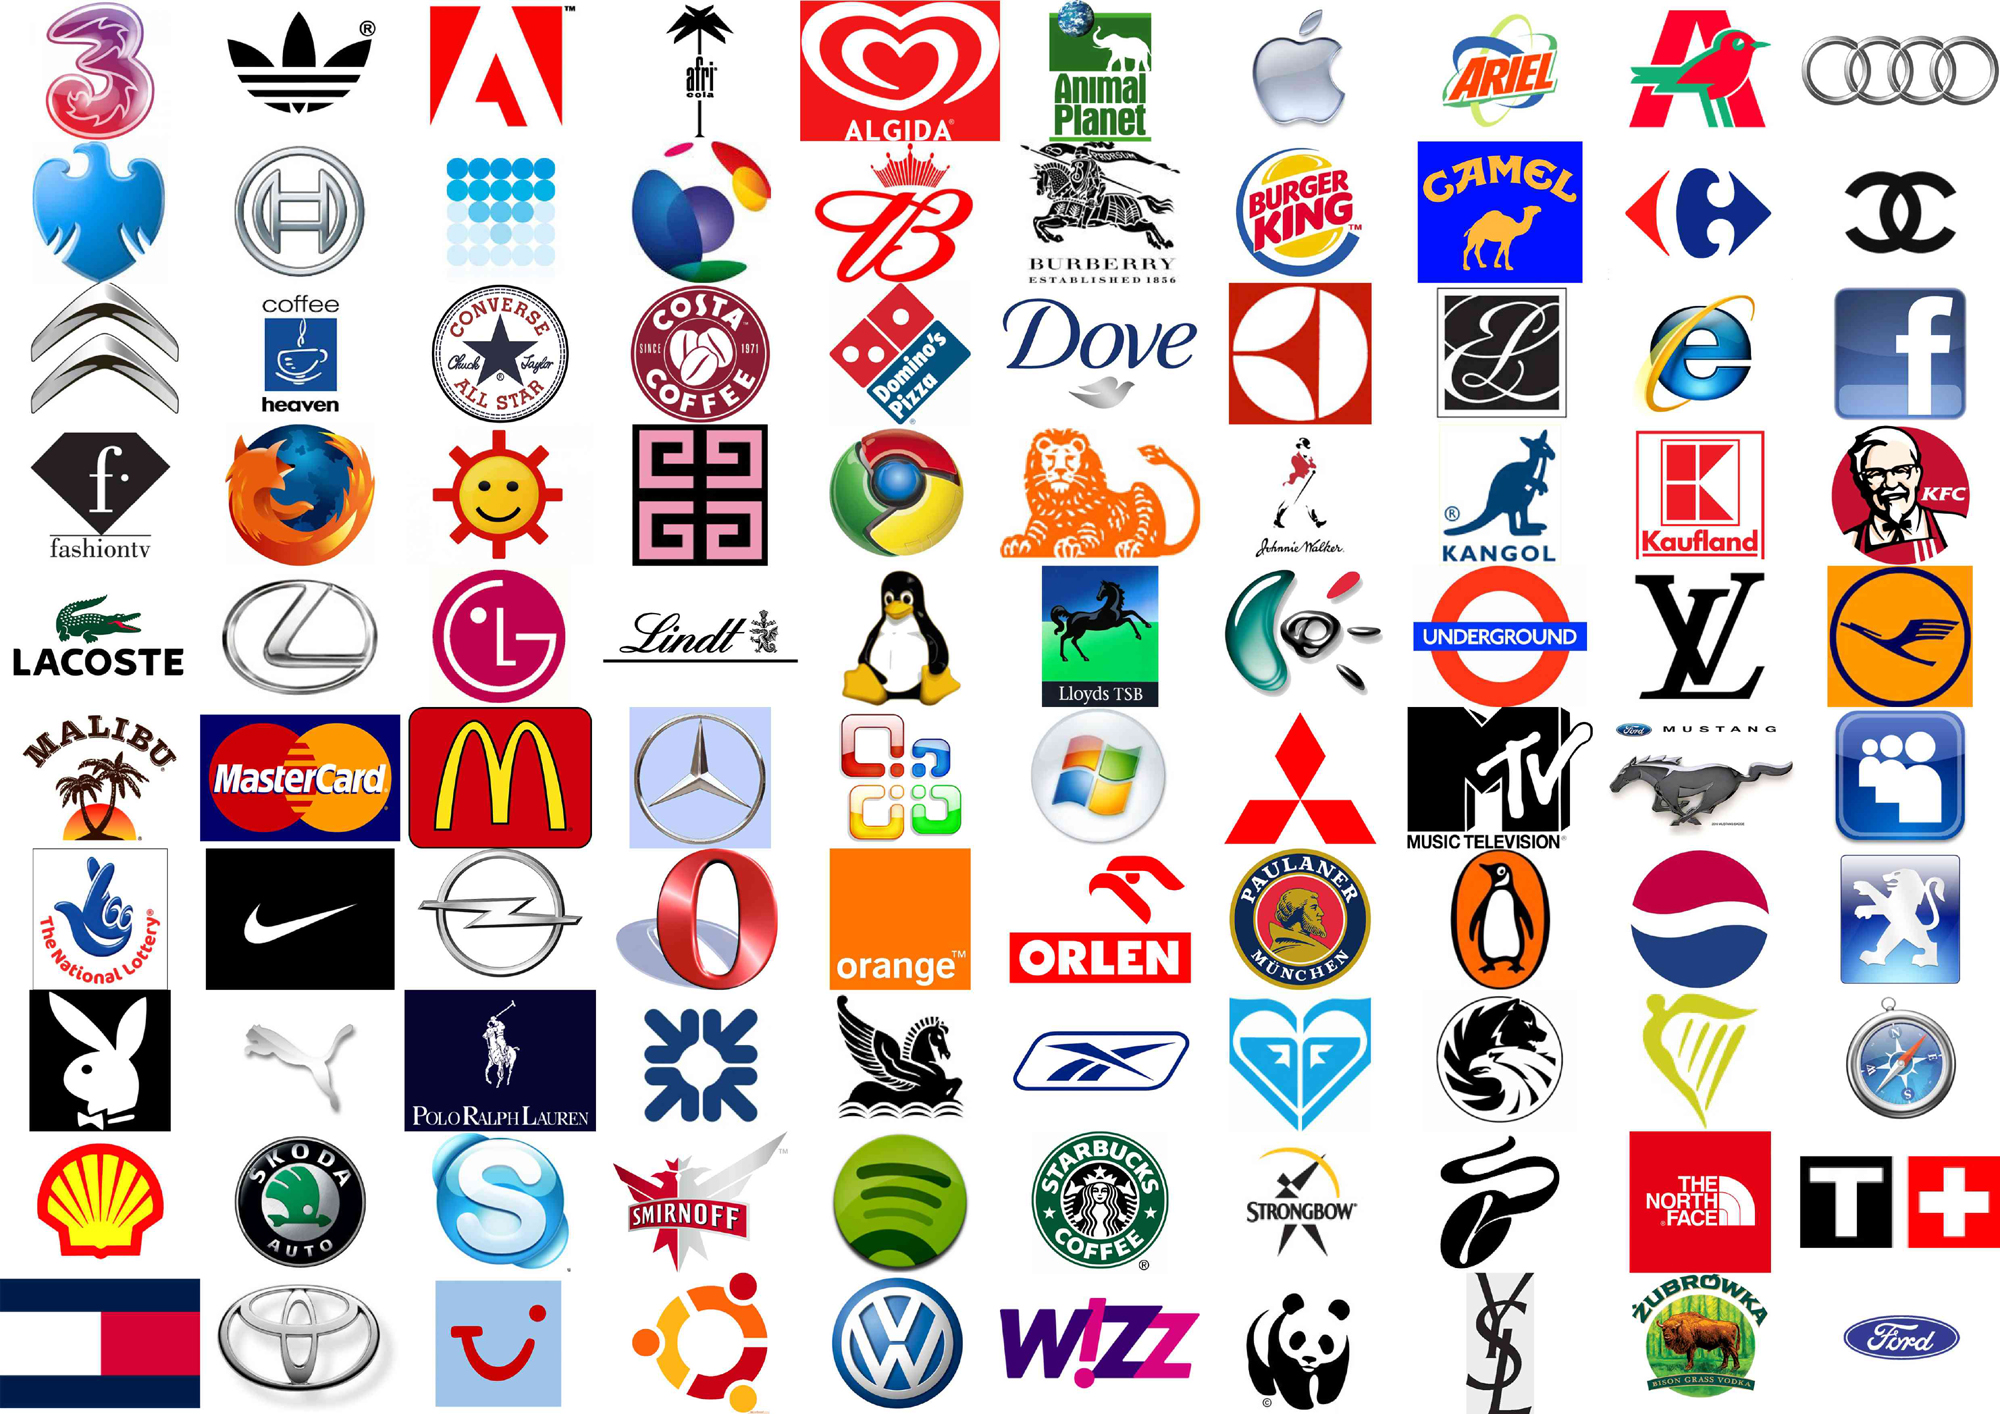 famous-logos-brand-branding-nepa-scene